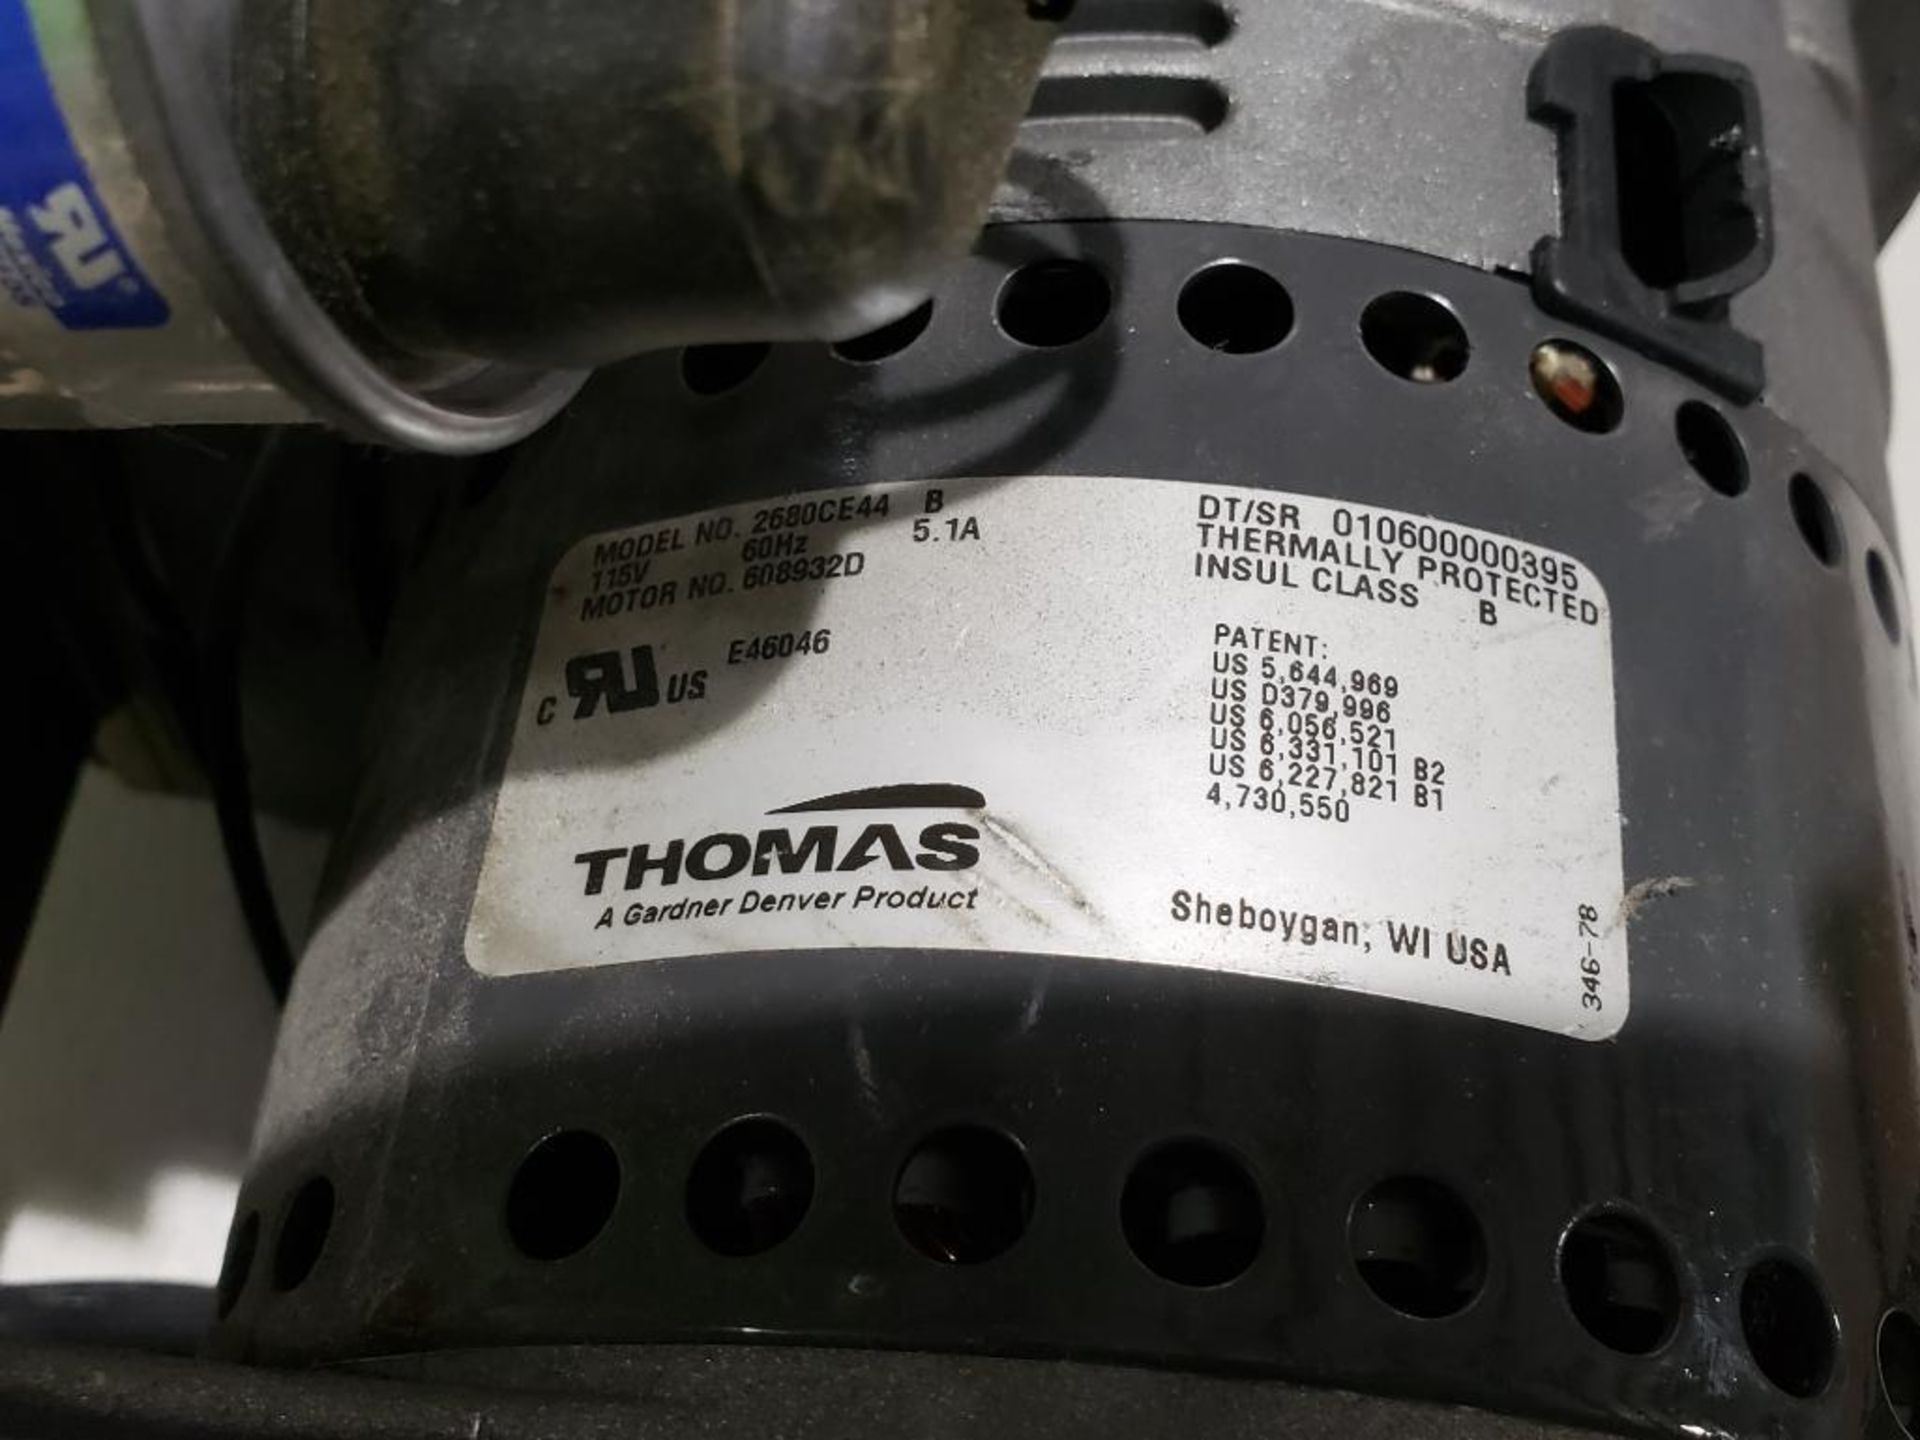 Thomas Gardner Denver oil-less piston air compressor vacuum pump. Model 2680CE44. - Image 3 of 5